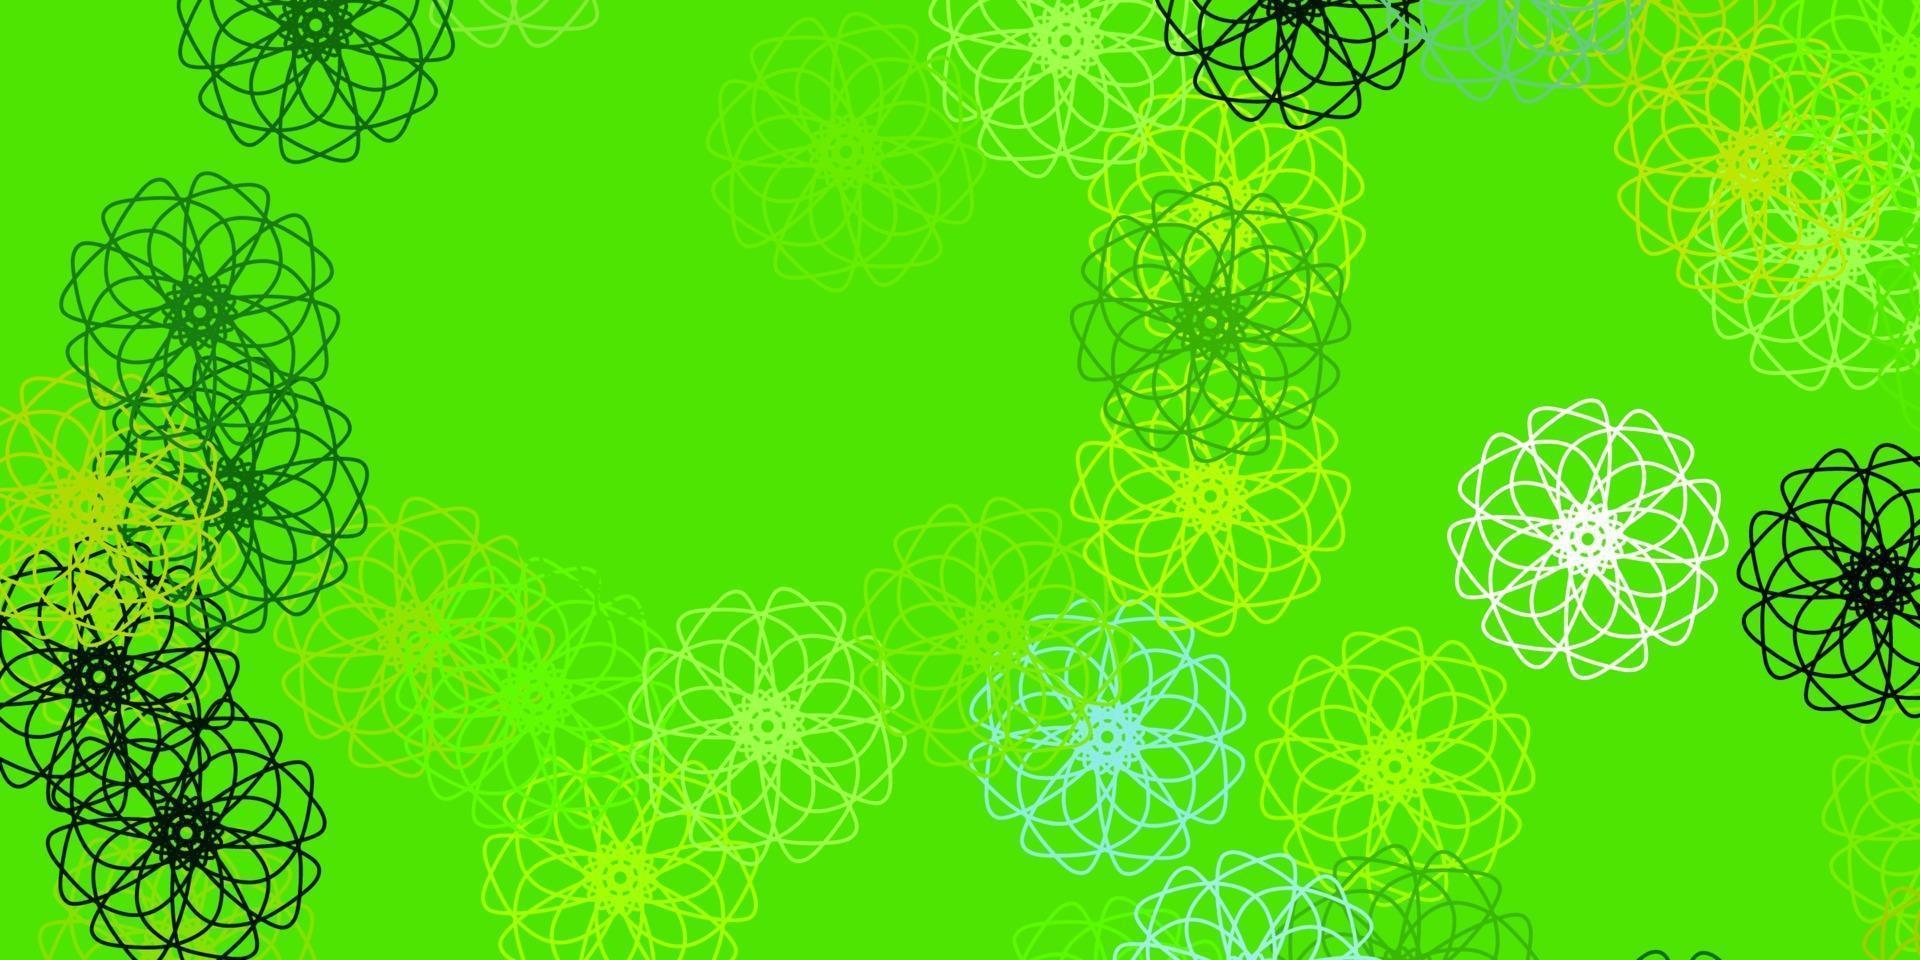 modello di doodle vettoriale verde chiaro, giallo con fiori.